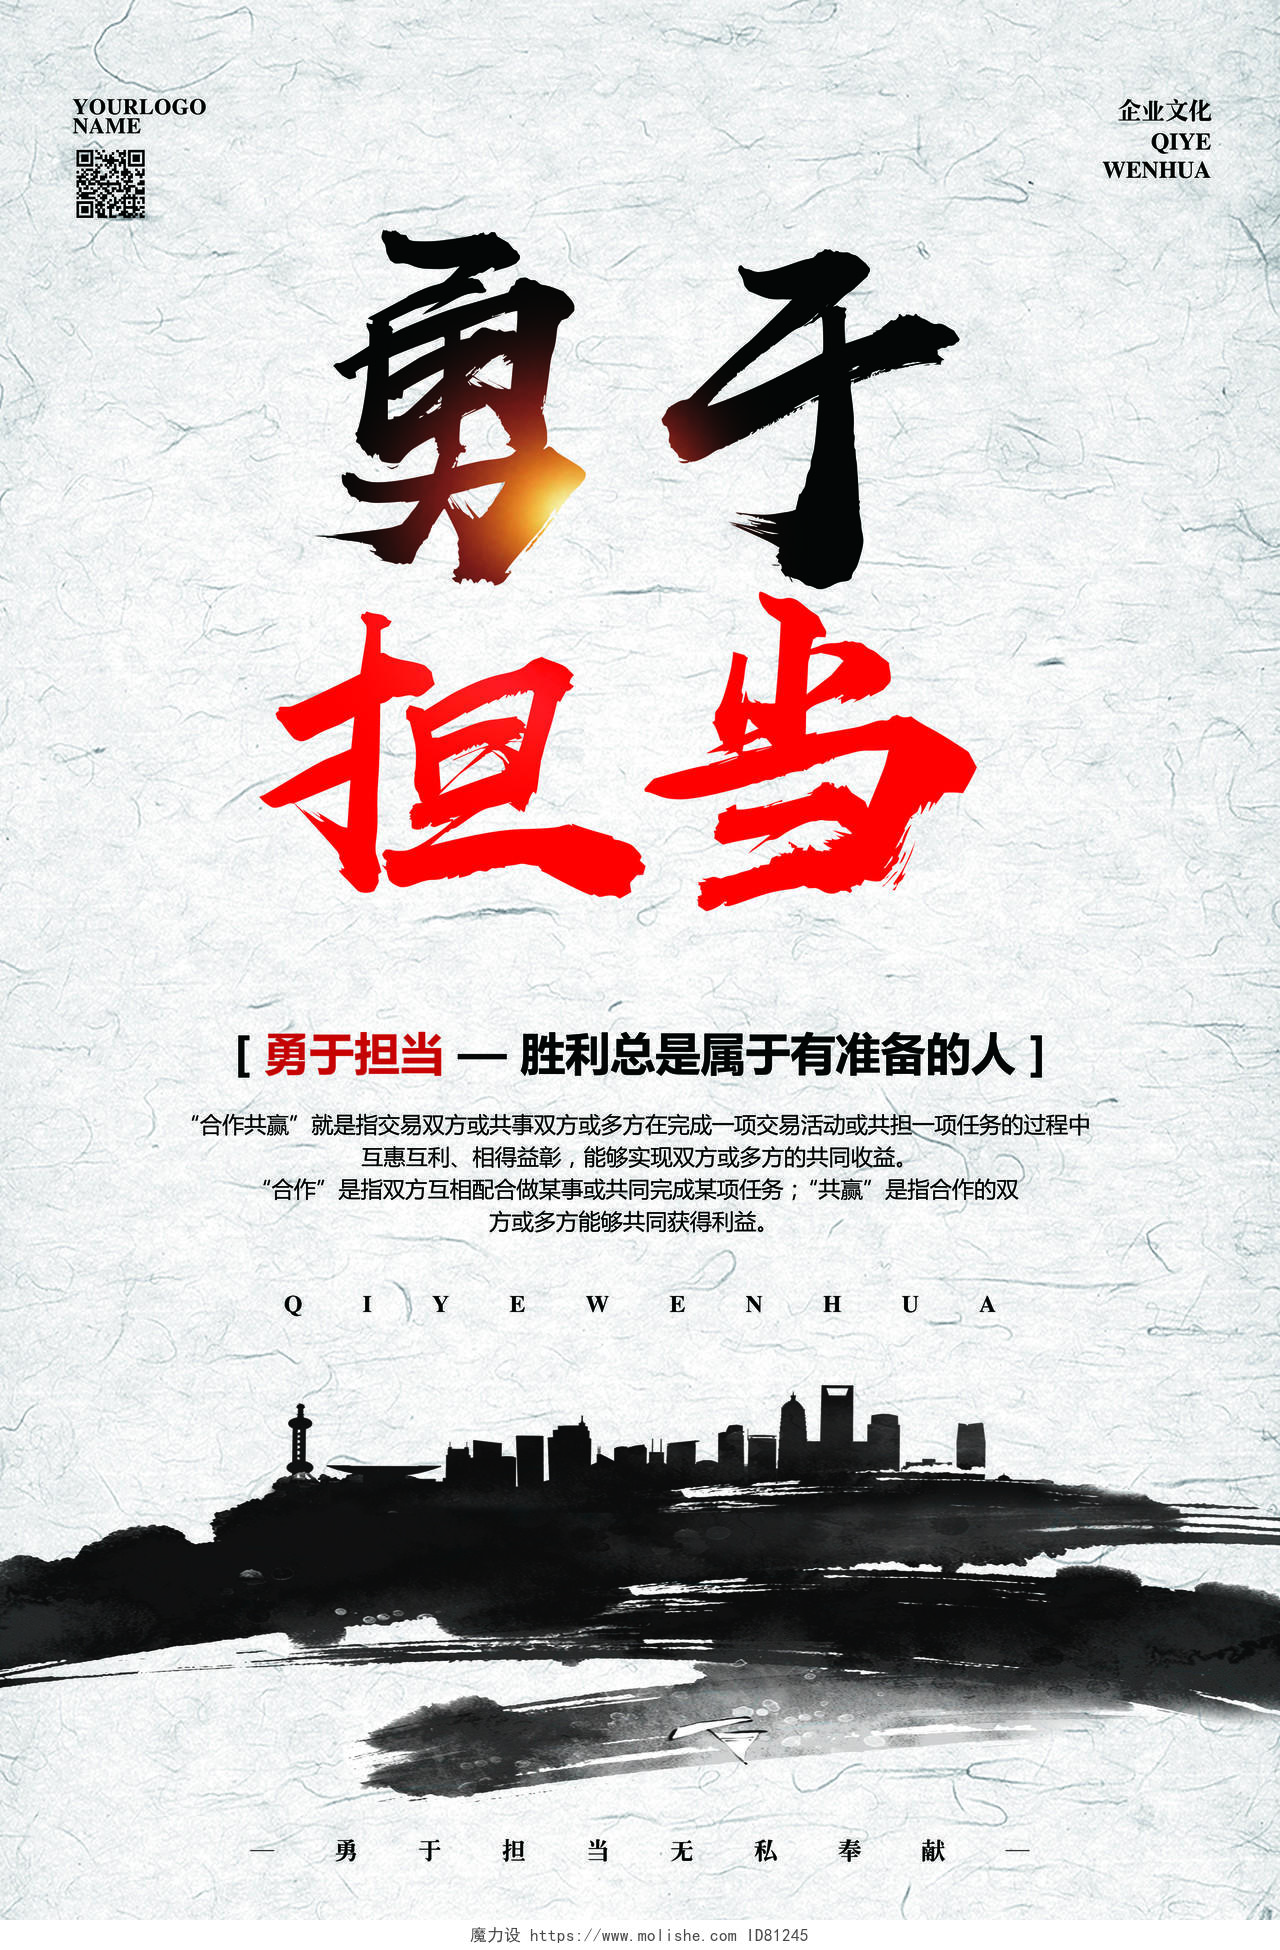 中国风企业文化励志标语责任与担当宣传海报